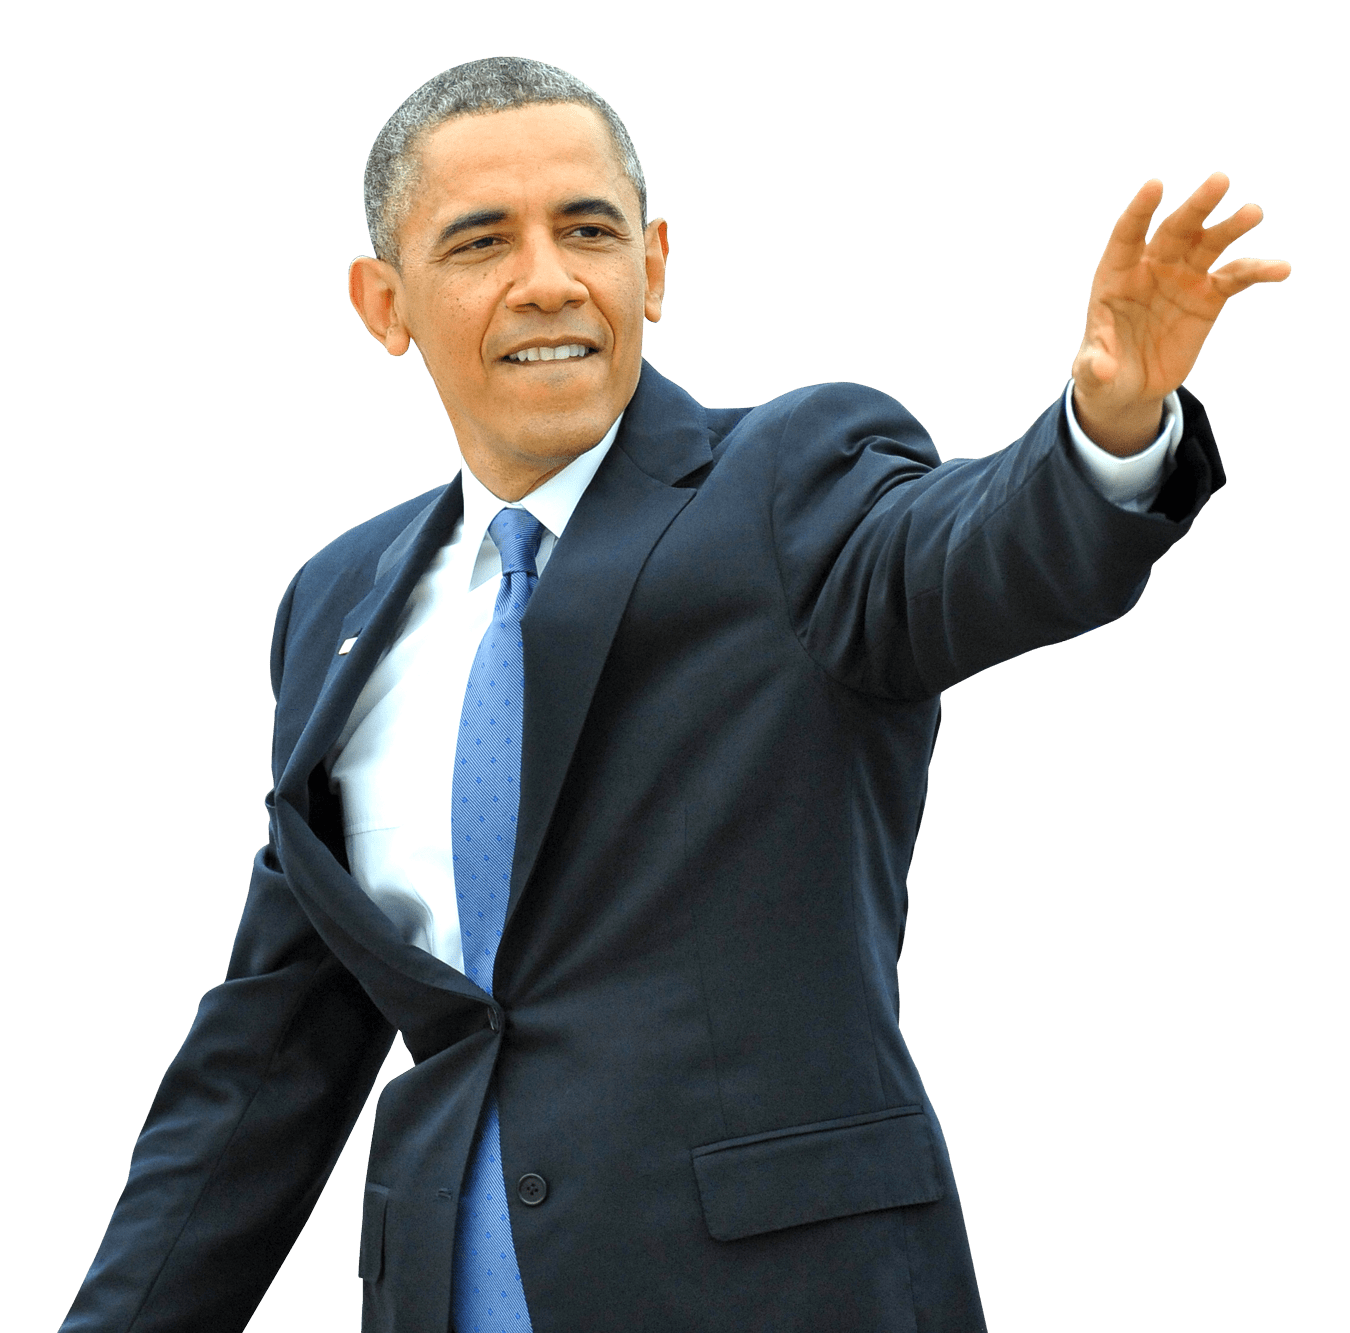 Download PNG image - Barack Obama Suit PNG 